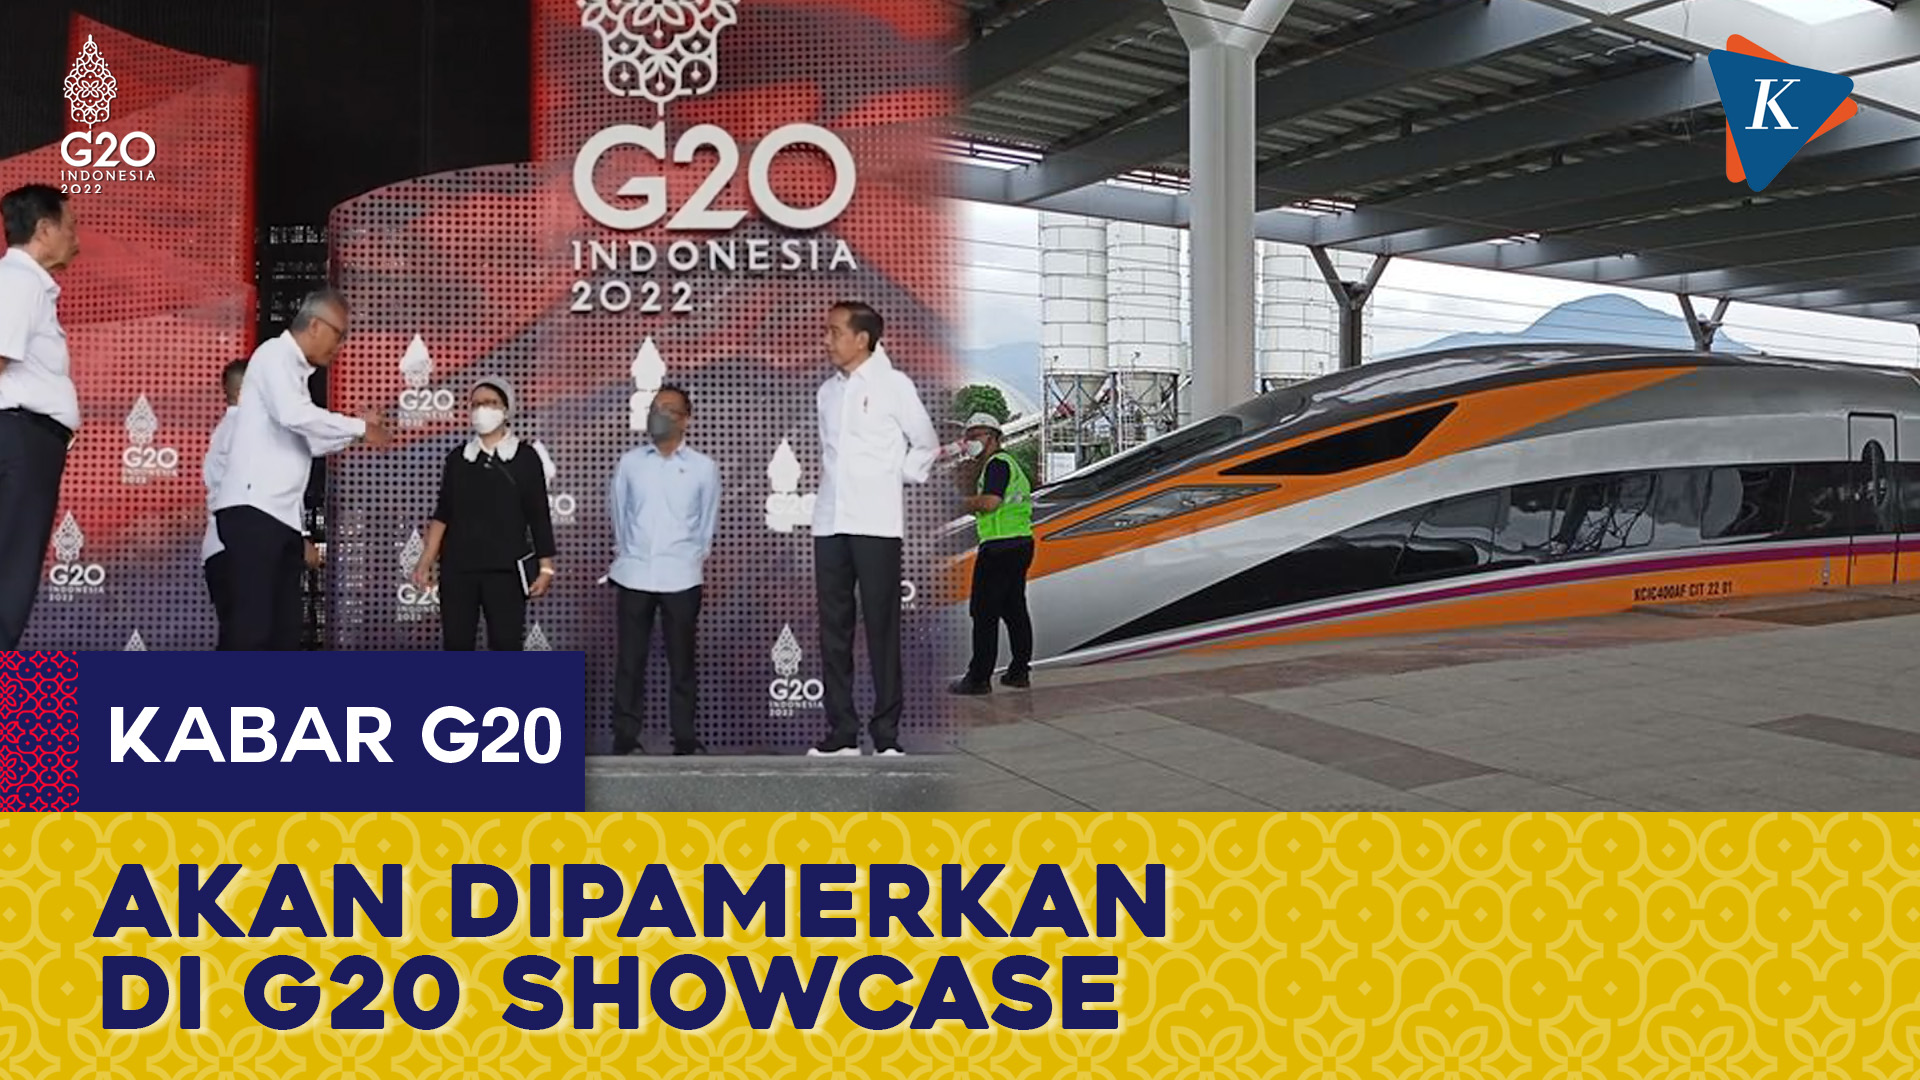 Kereta Cepat Jakarta Bandung Bakal Dipamerkan di G20 Showcase